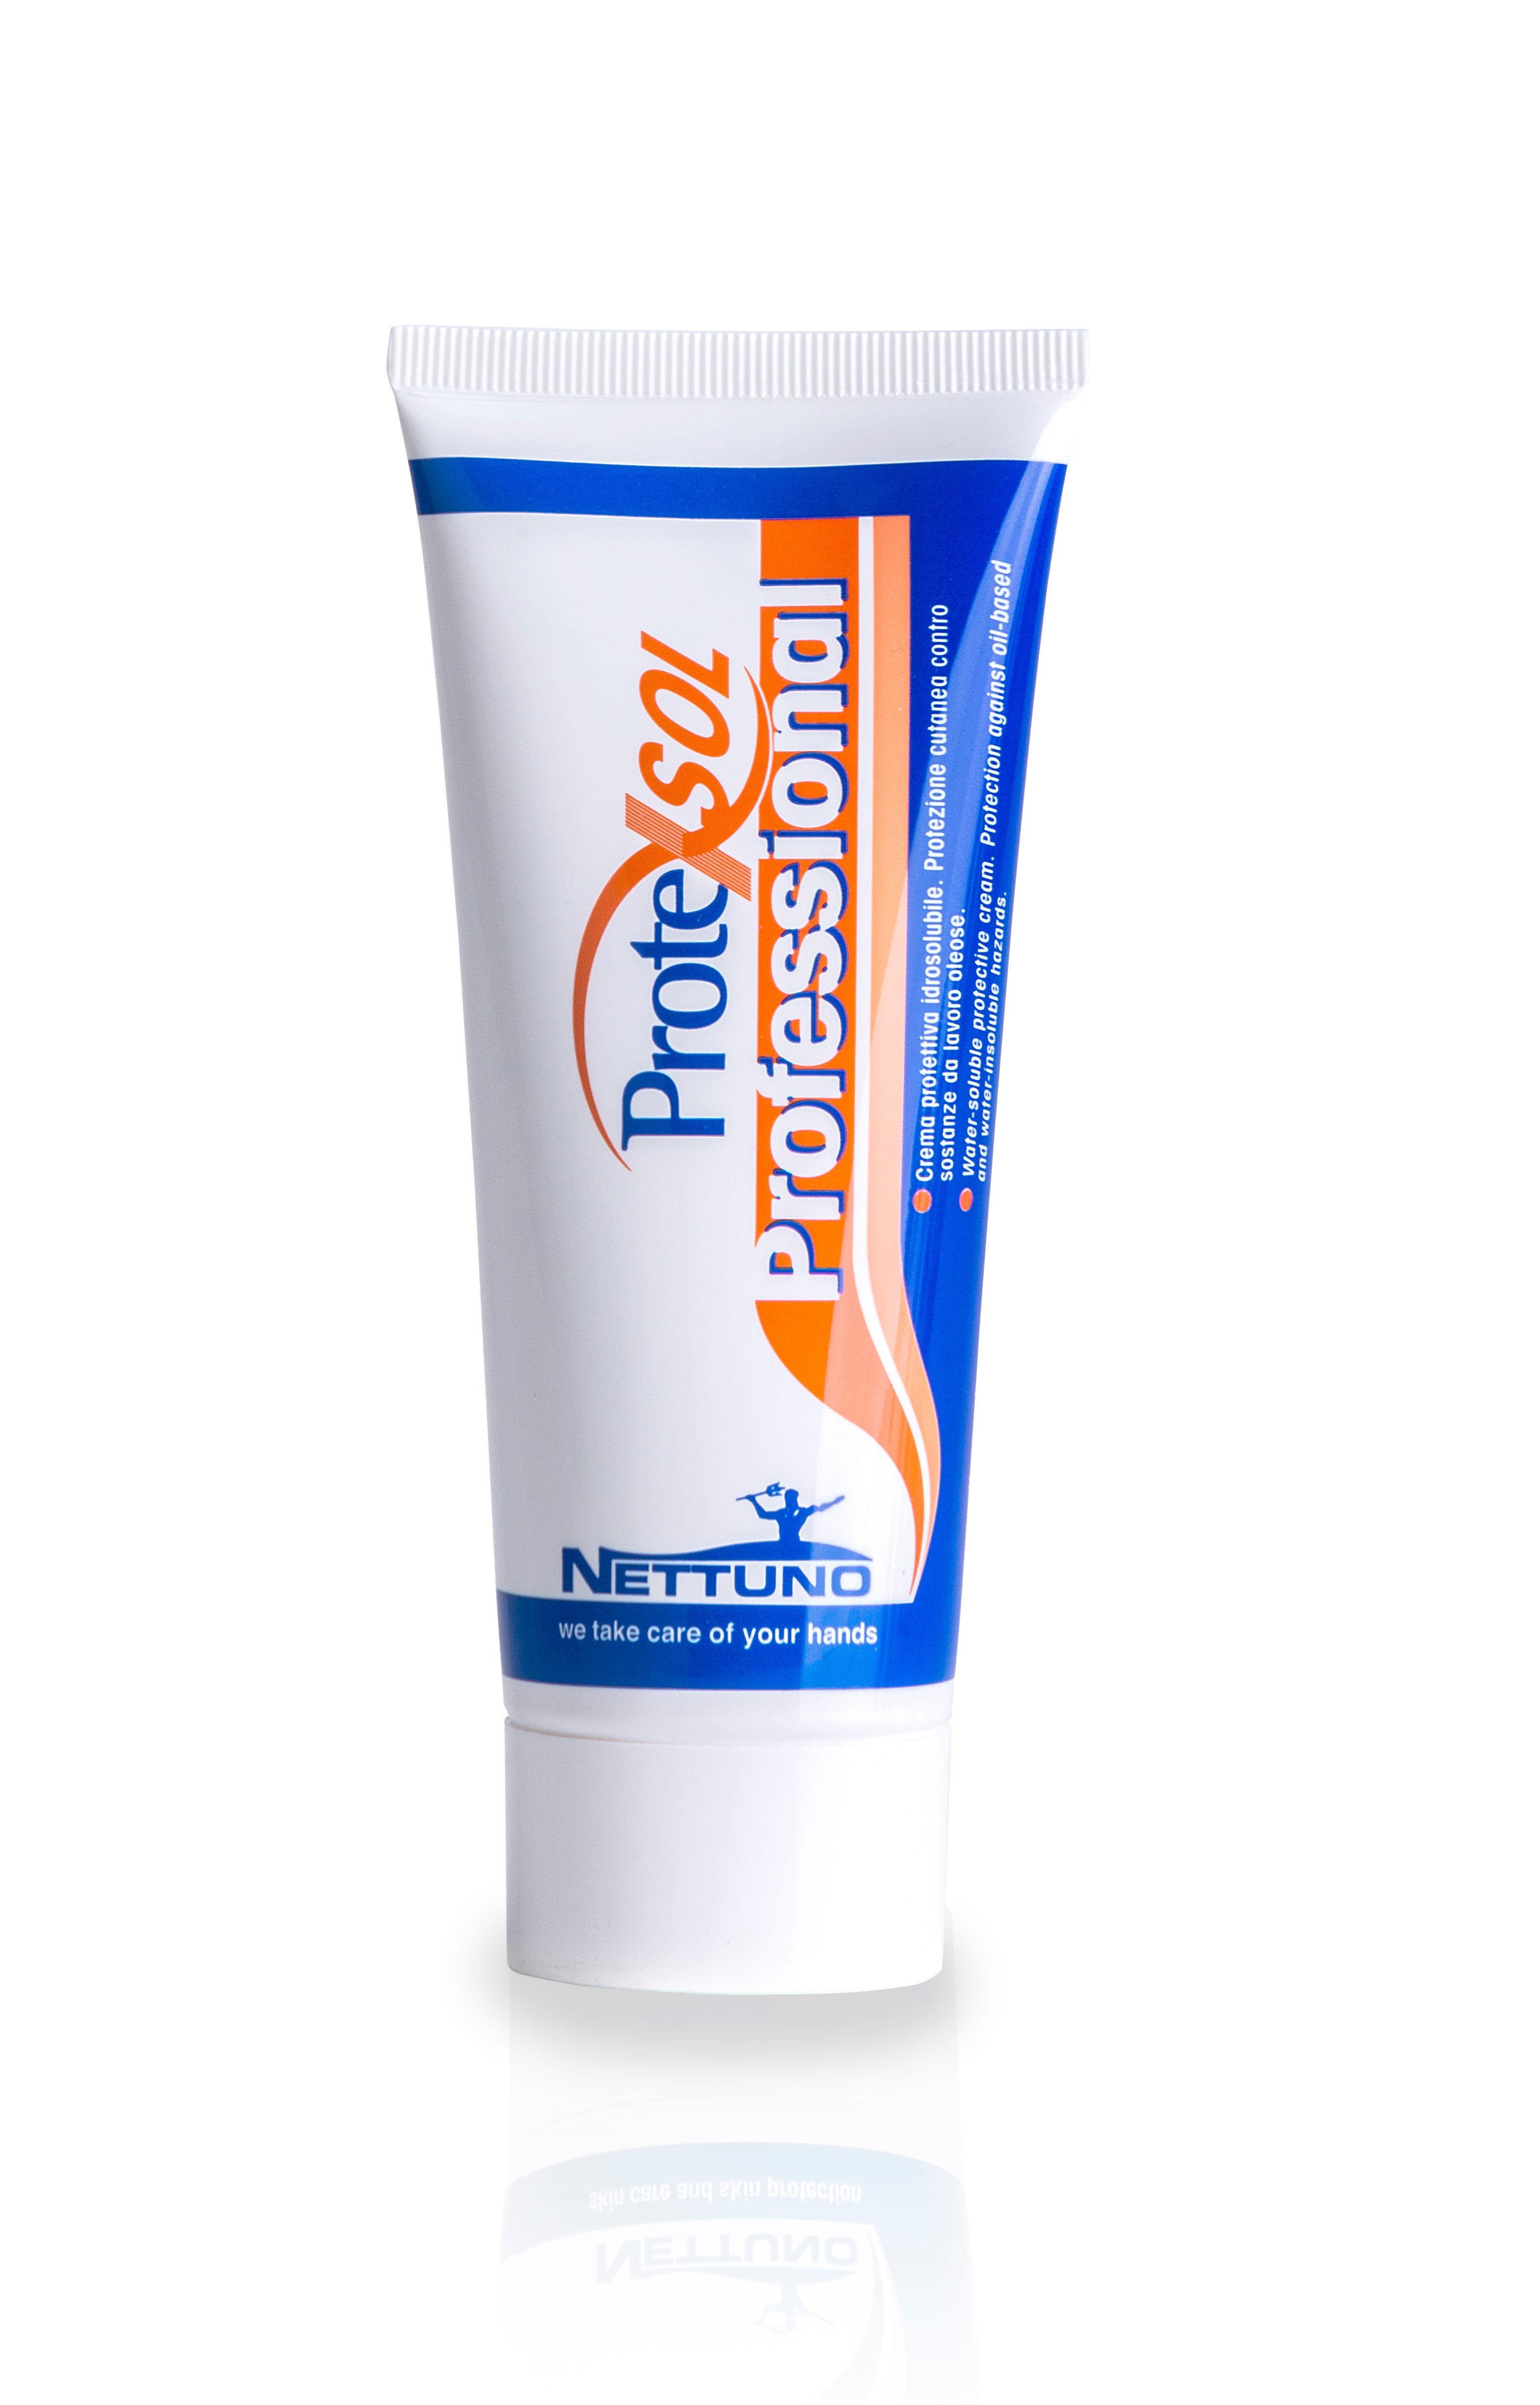 Crema barriera protettiva per mani contro sostanze oleose e grasse. Solubile in acqua. 100ML Nettuno Protexsol Professional